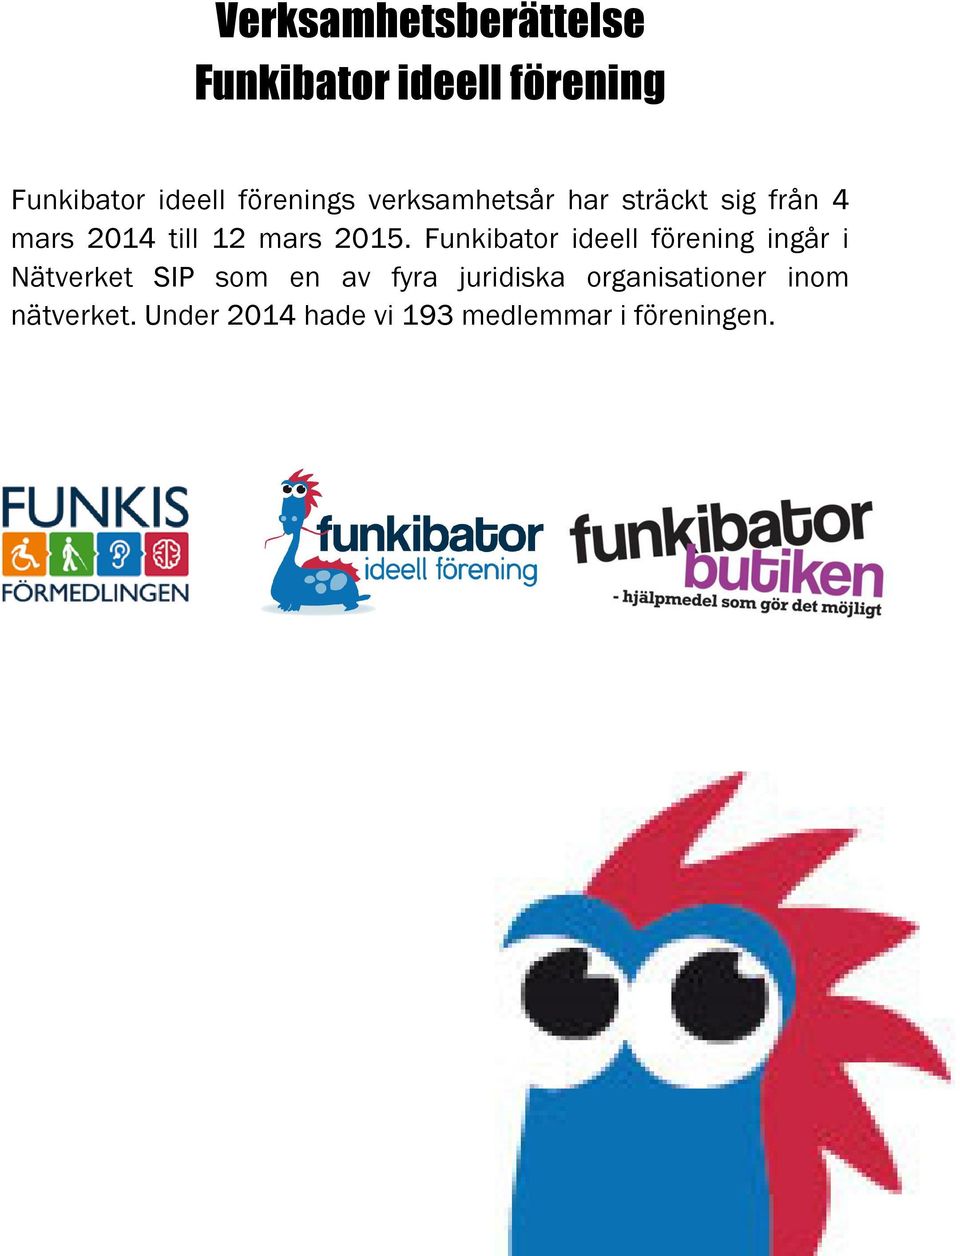 2015. Funkibator ideell förening ingår i Nätverket SIP som en av fyra